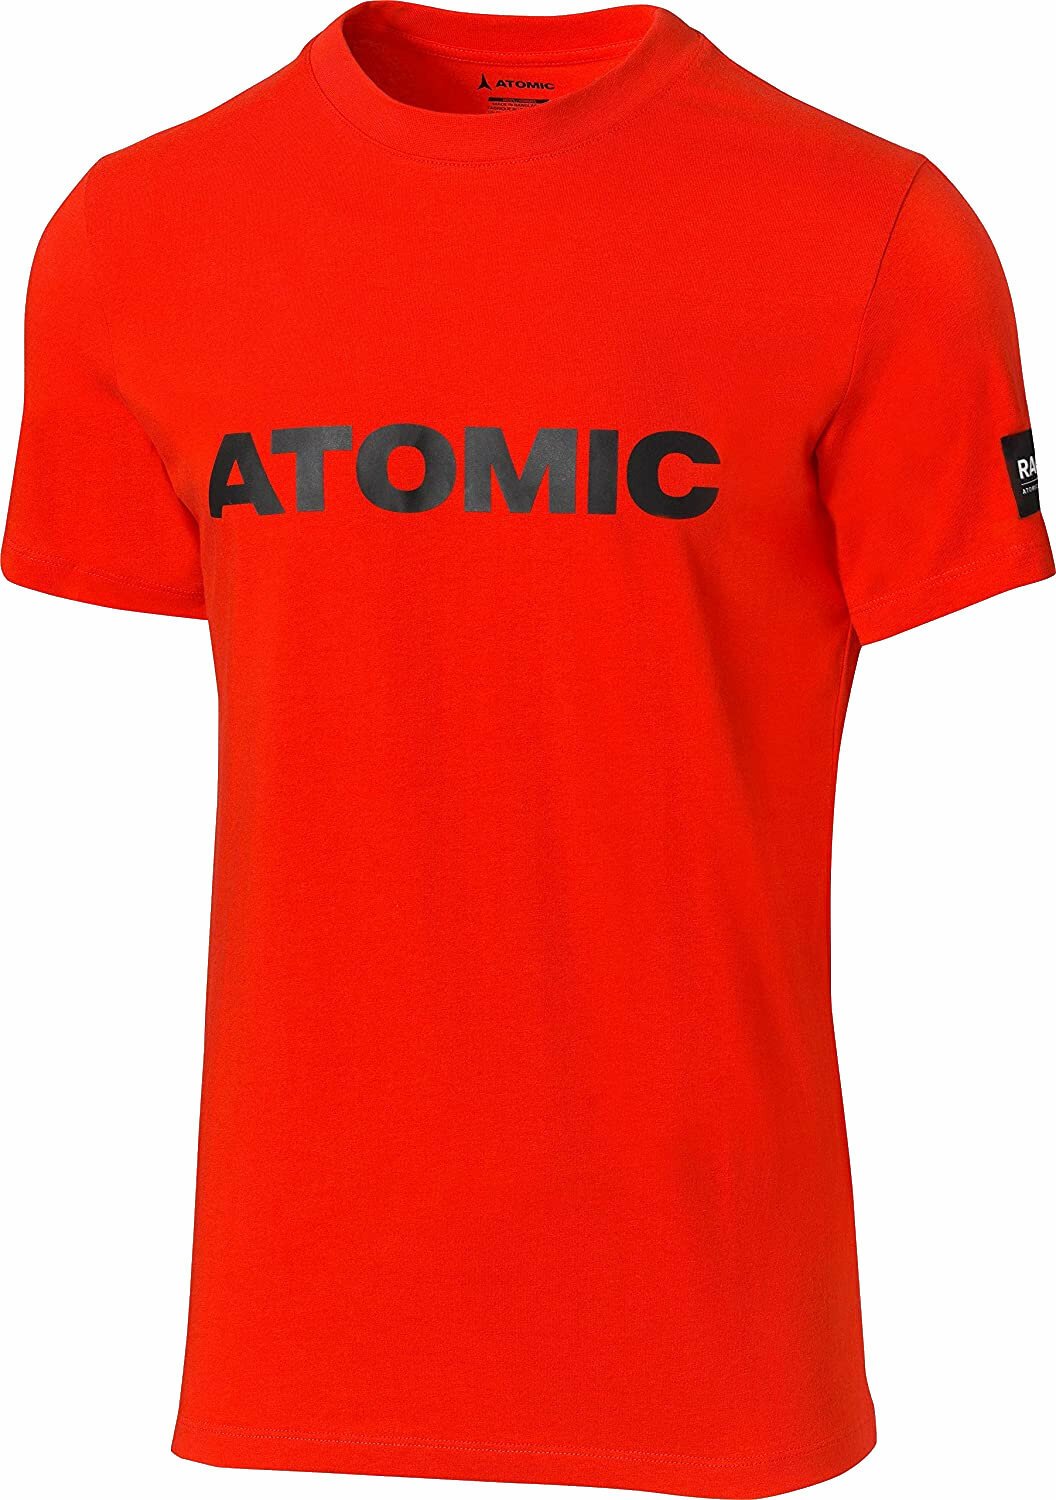 Φούτερ και Μπλούζα Σκι Atomic RS T-Shirt Κόκκινο ( παραλλαγή ) 2XL Κοντομάνικη μπλούζα